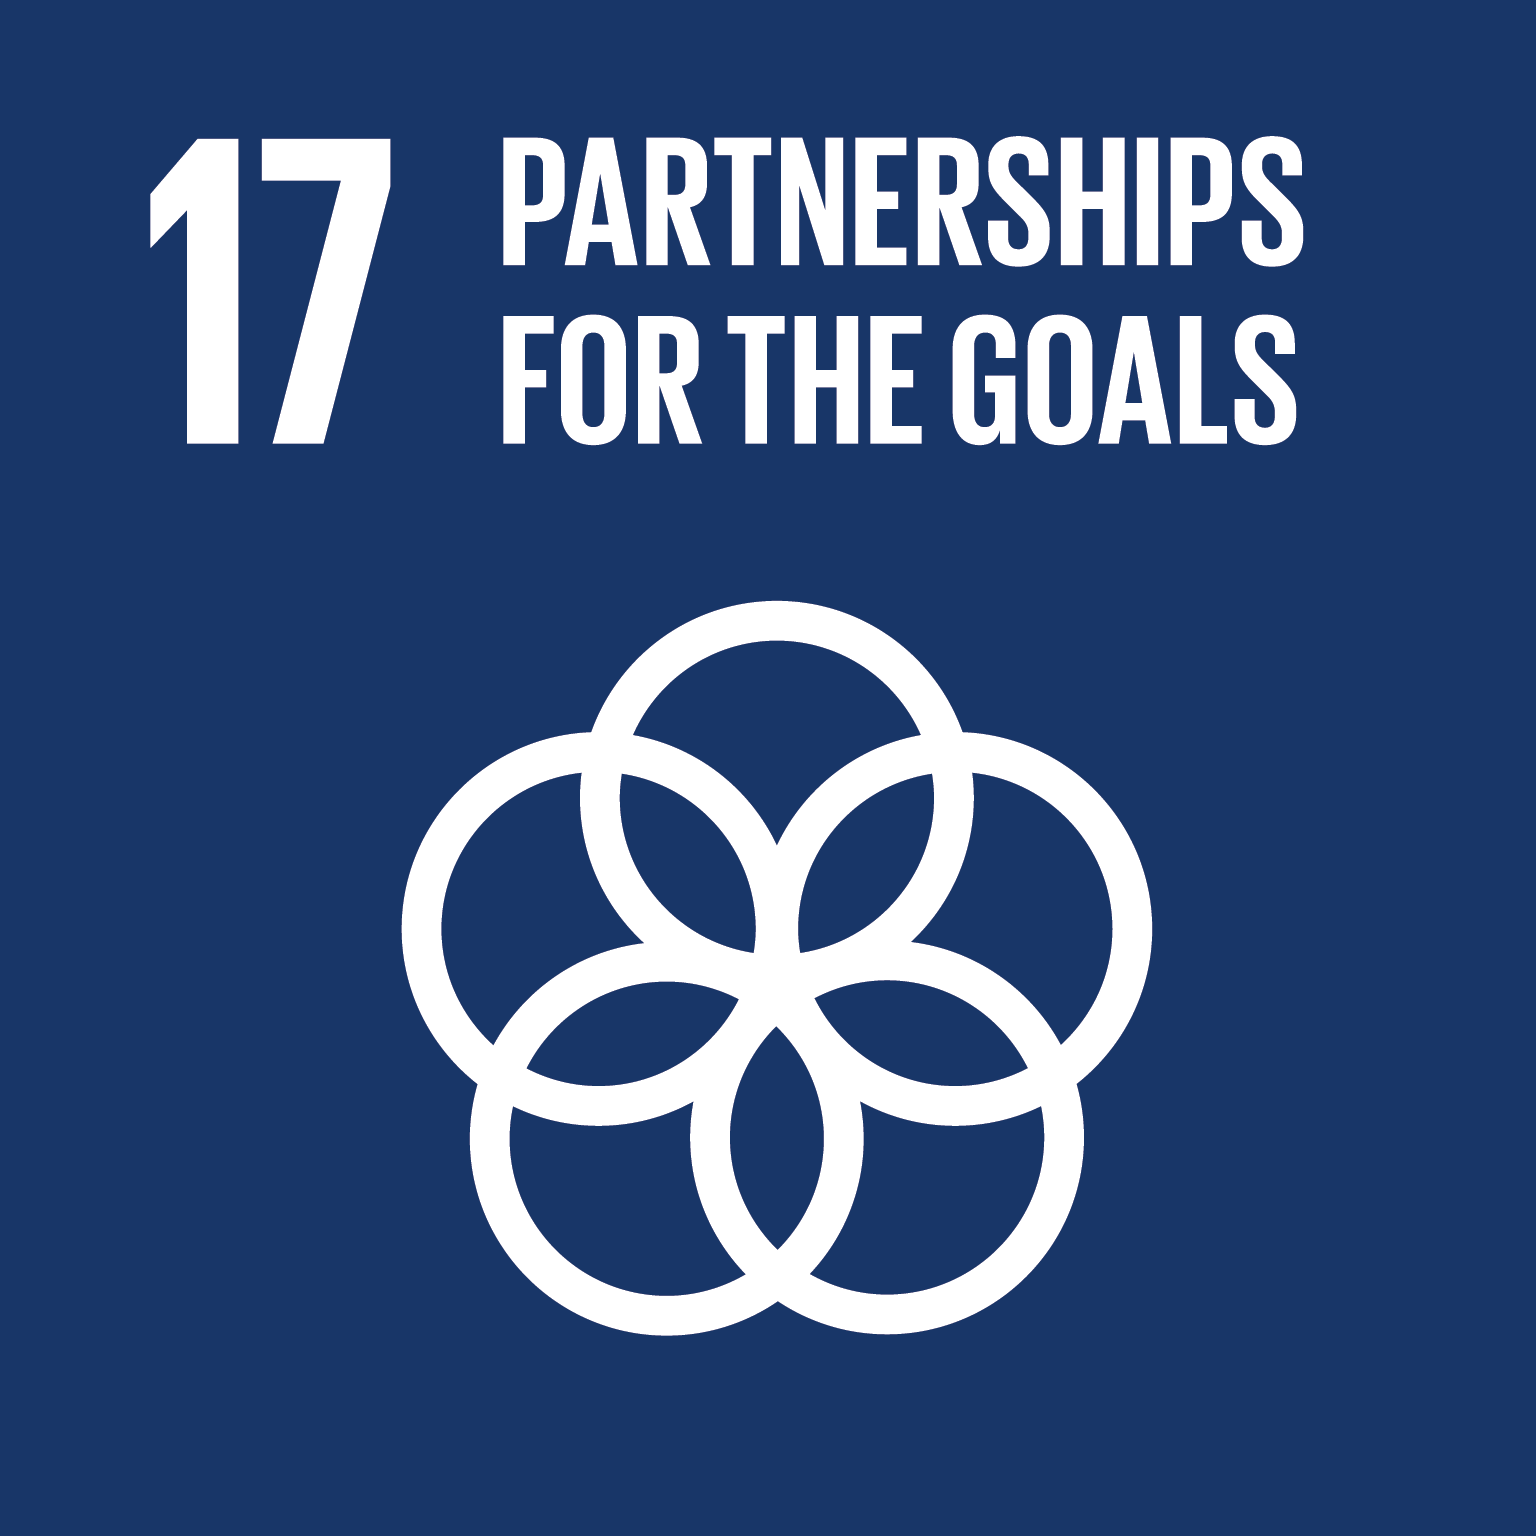 Resultado de imagem para sustainable development goals partnership for the goals